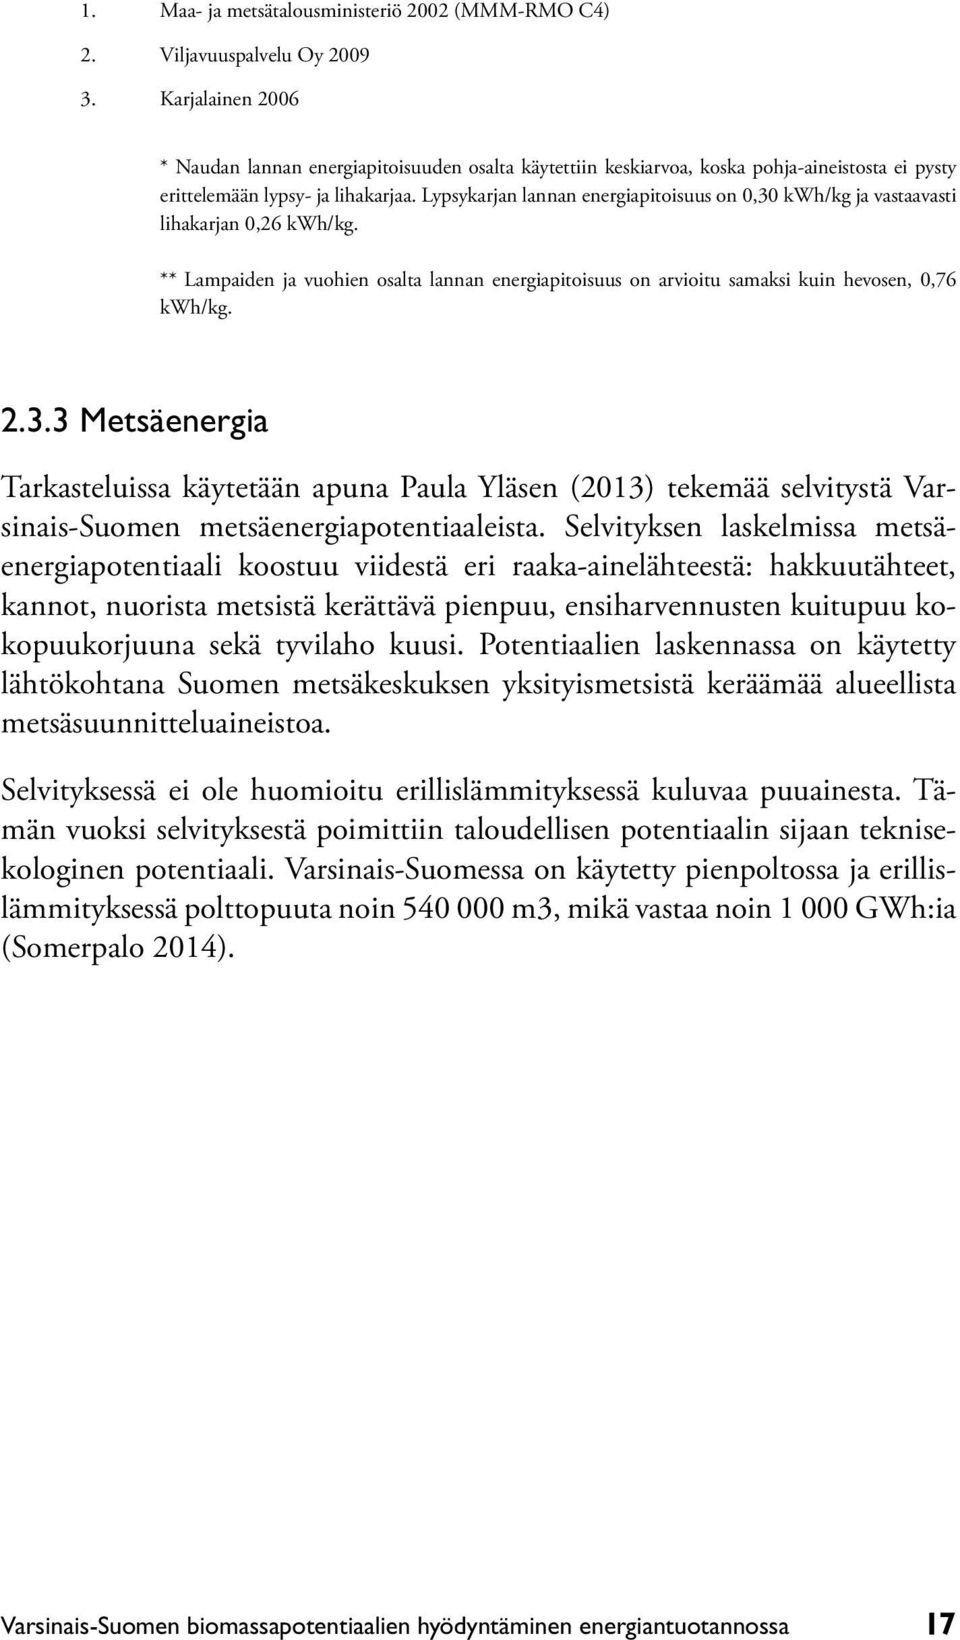 Lypsykarjan lannan energiapitoisuus on 0,30 kwh/kg ja vastaavasti lihakarjan 0,26 kwh/kg. ** Lampaiden ja vuohien osalta lannan energiapitoisuus on arvioitu samaksi kuin hevosen, 0,76 kwh/kg. 2.3.3 Metsäenergia Tarkasteluissa käytetään apuna Paula Yläsen (2013) tekemää selvitystä Varsinais-Suomen metsäenergiapotentiaaleista.